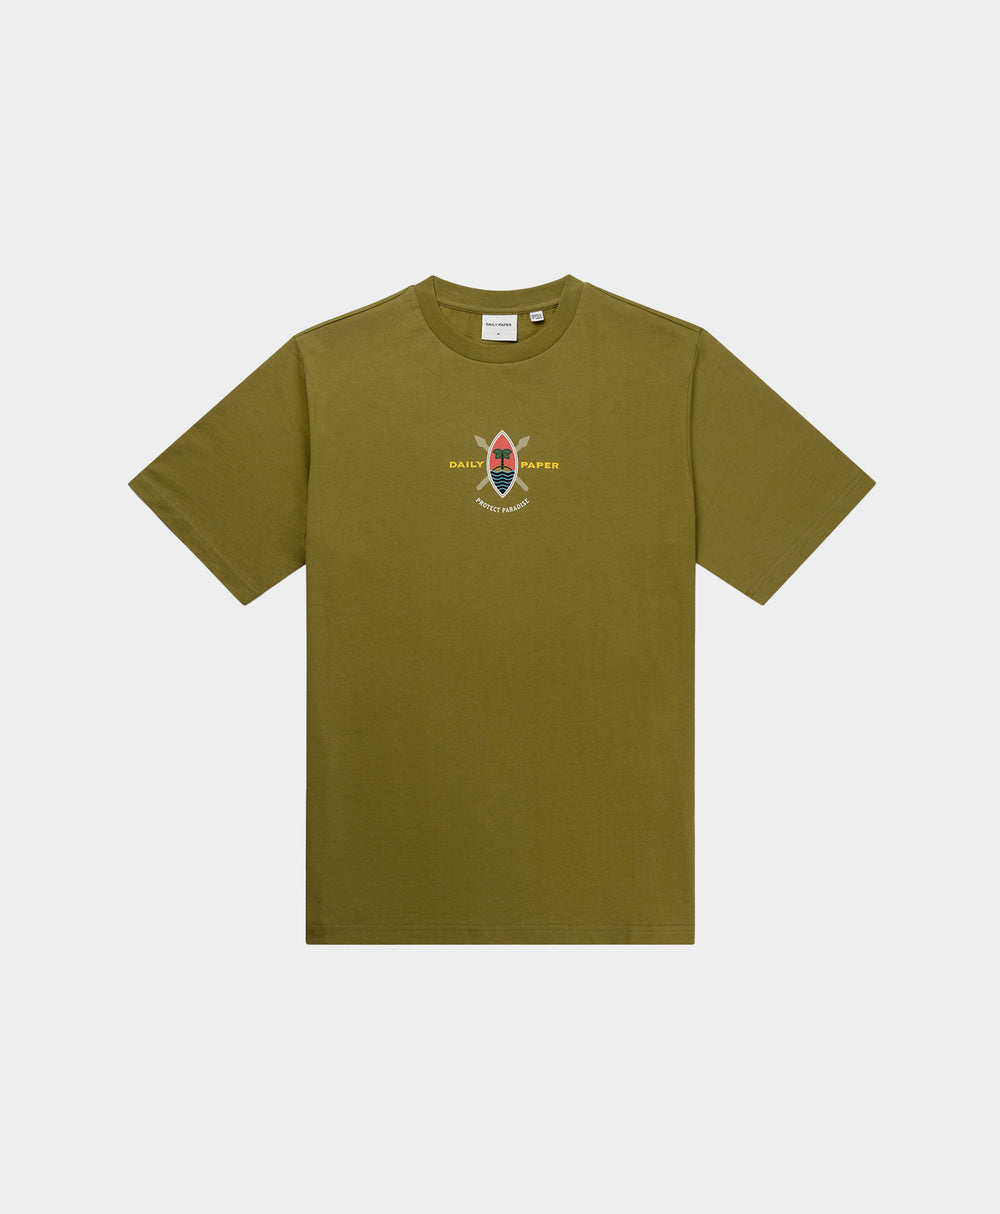 DP - Fir Green Purf T-Shirt - Packshot - Front